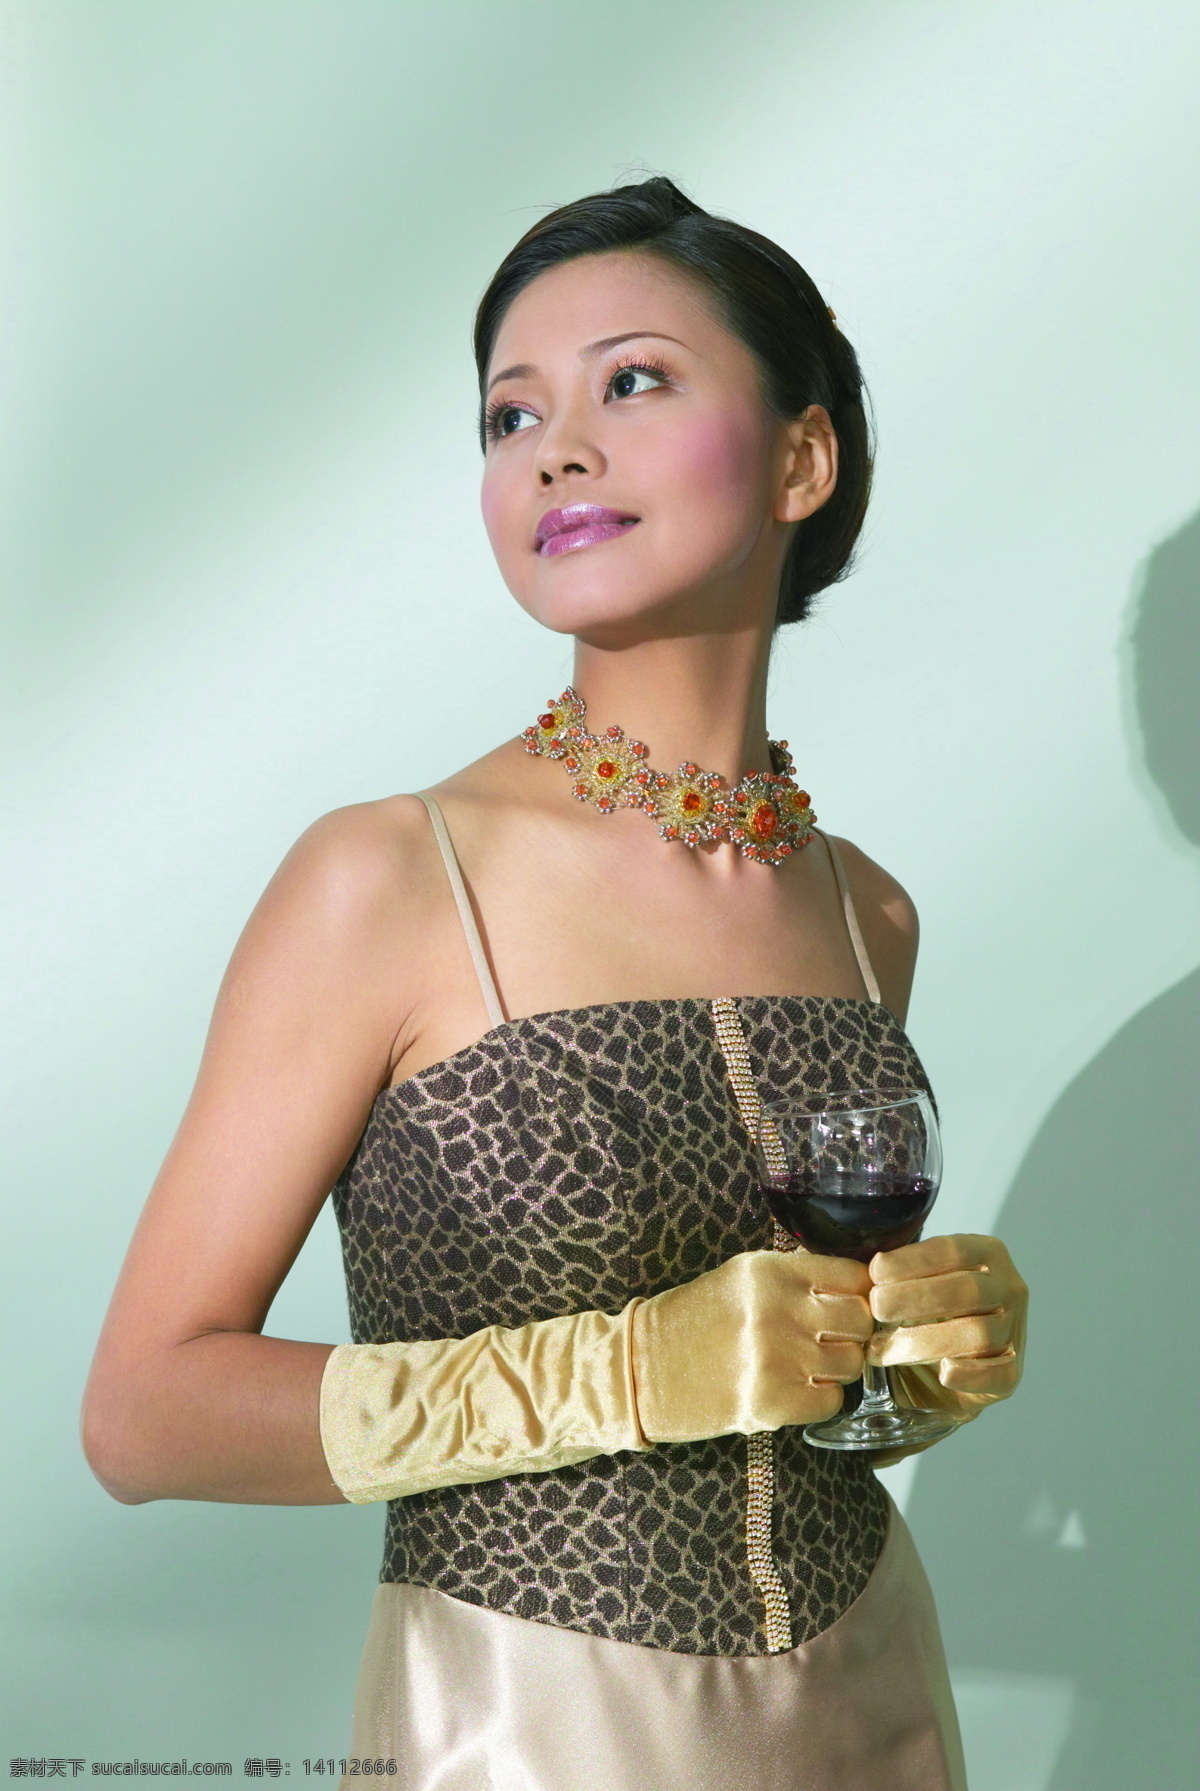 礼服 造型 人物图片 人物选型 各种造型 模特 姿势 亚洲女性 女人 人物图库 美女图片